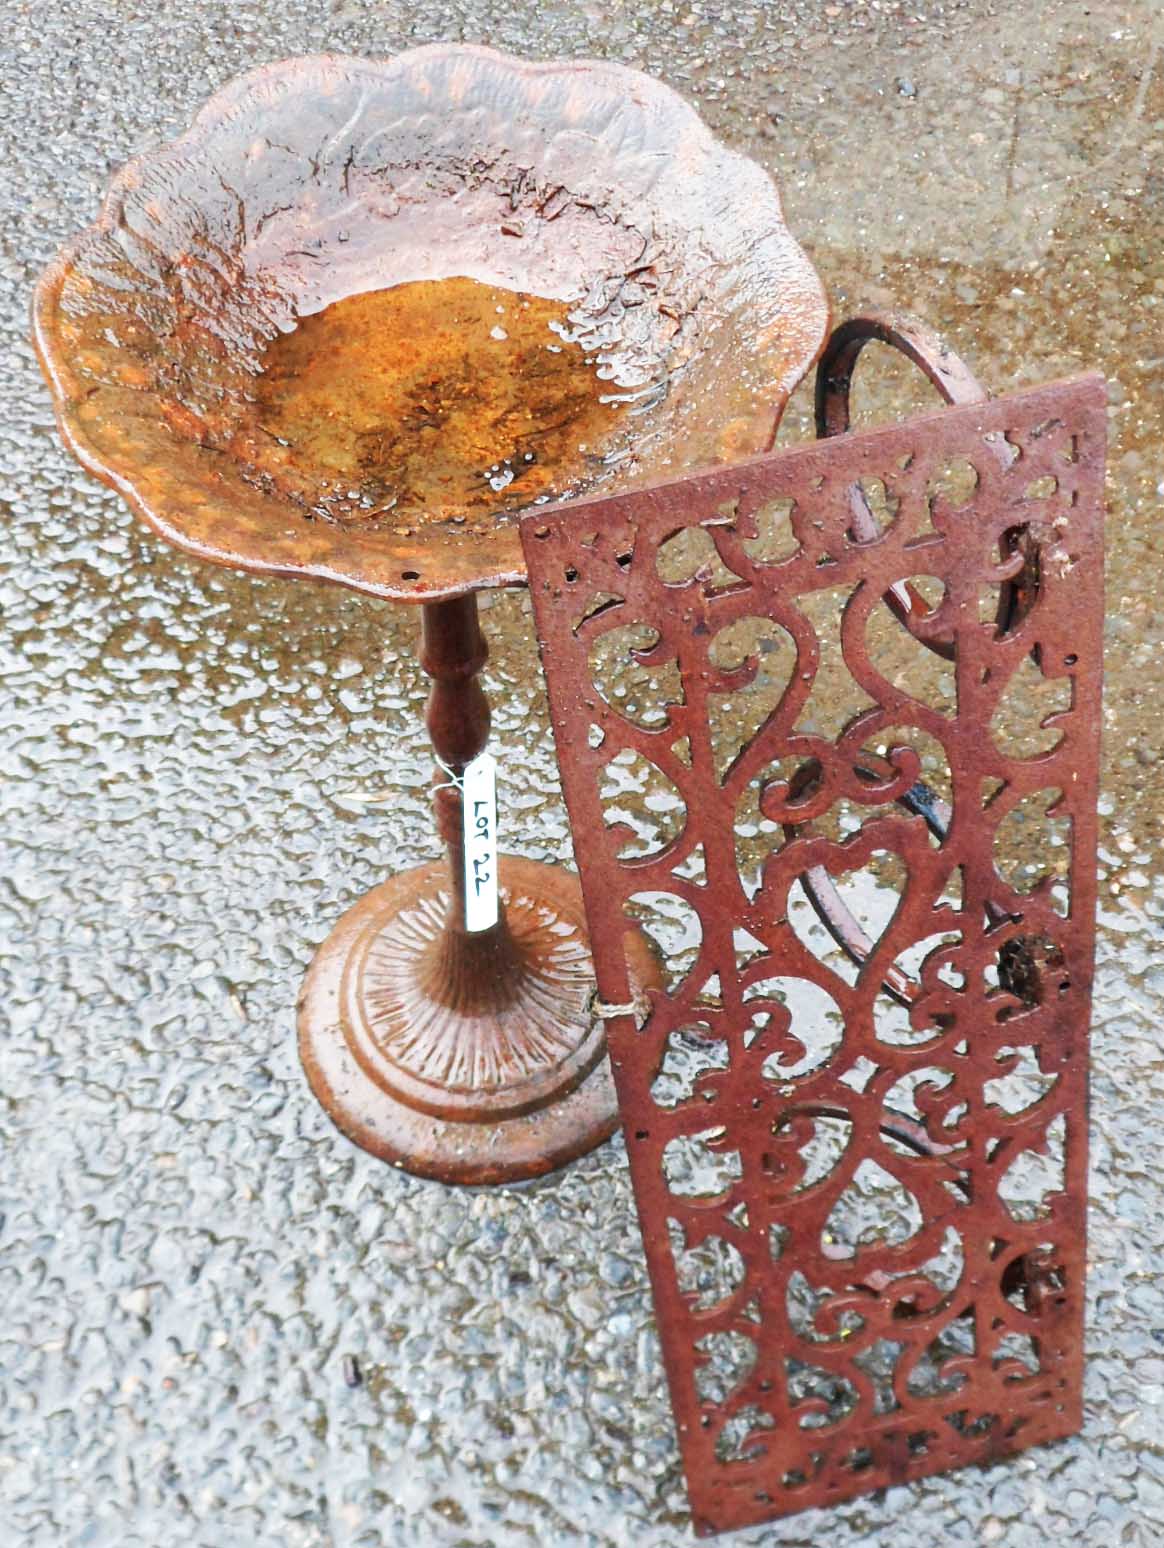 A cast metal bird bath and wrought iron garden shelf